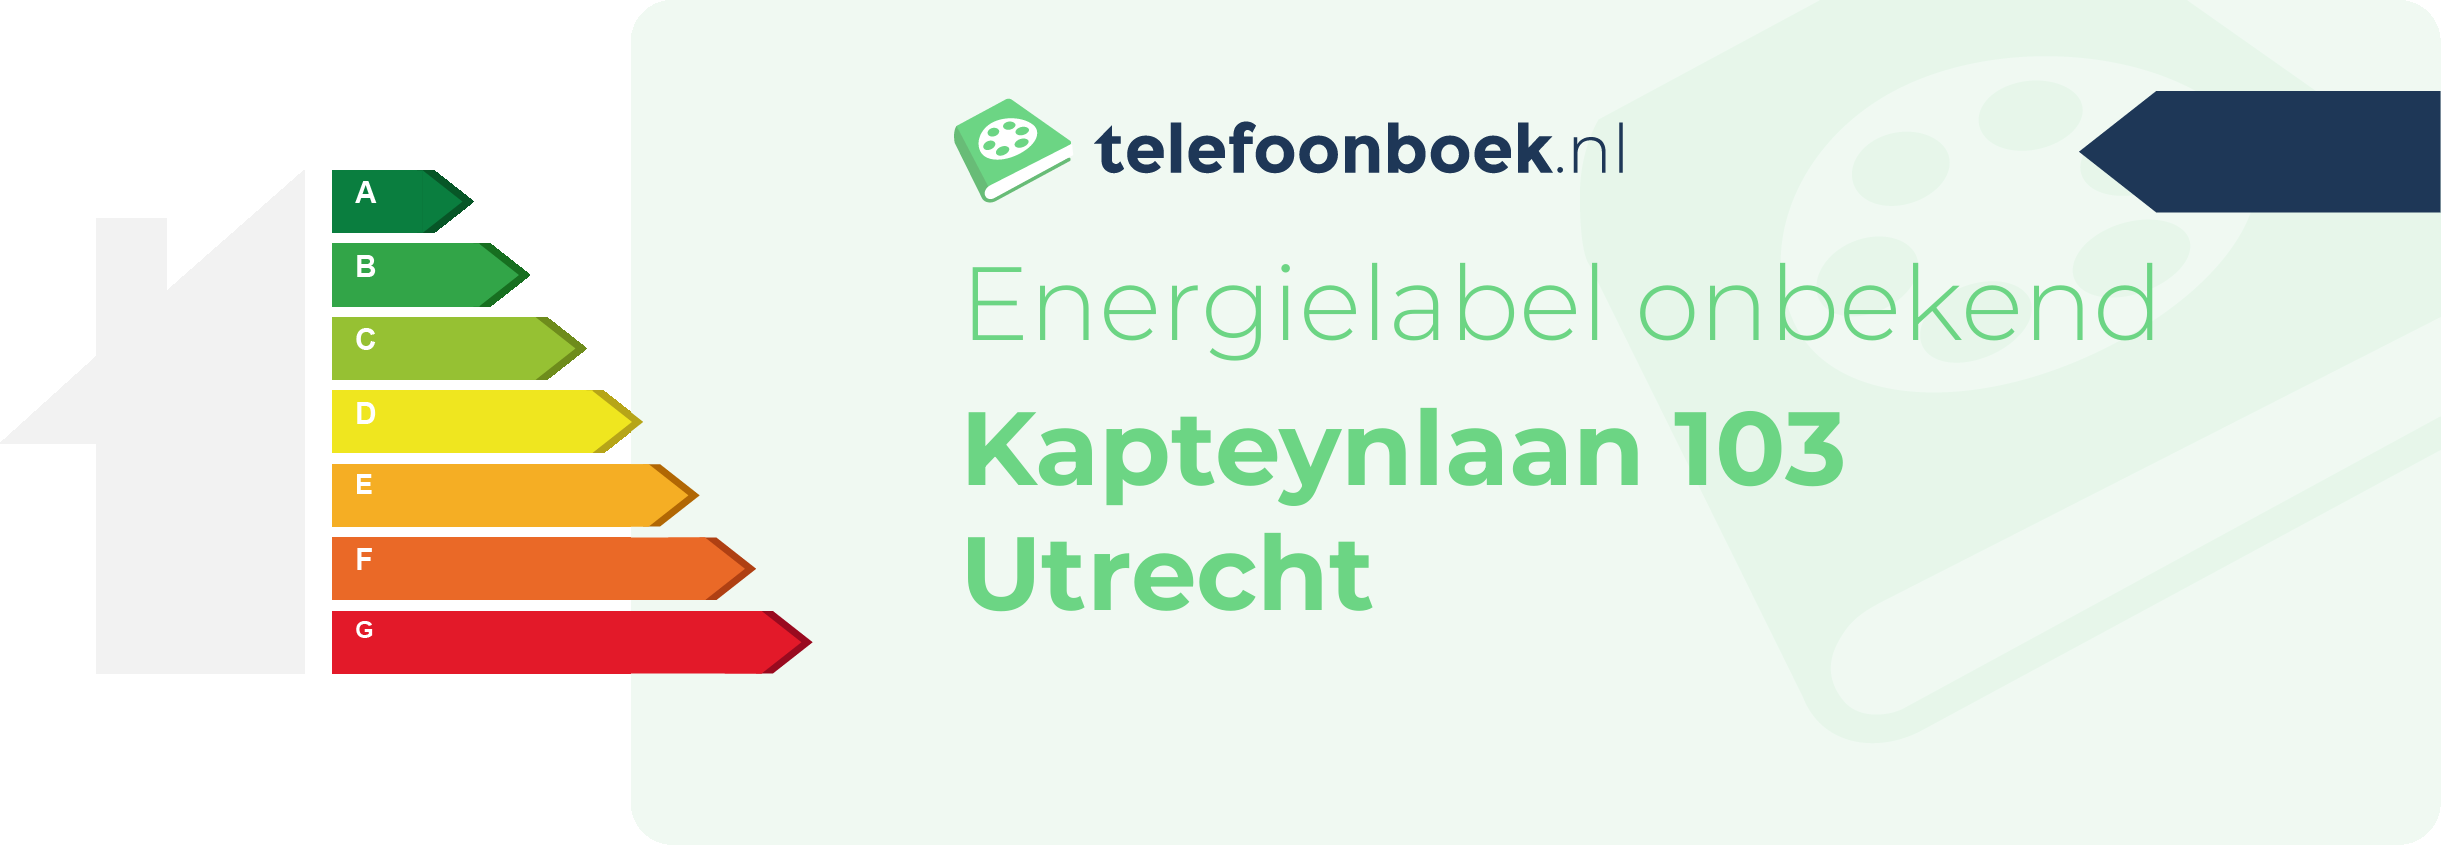 Energielabel Kapteynlaan 103 Utrecht